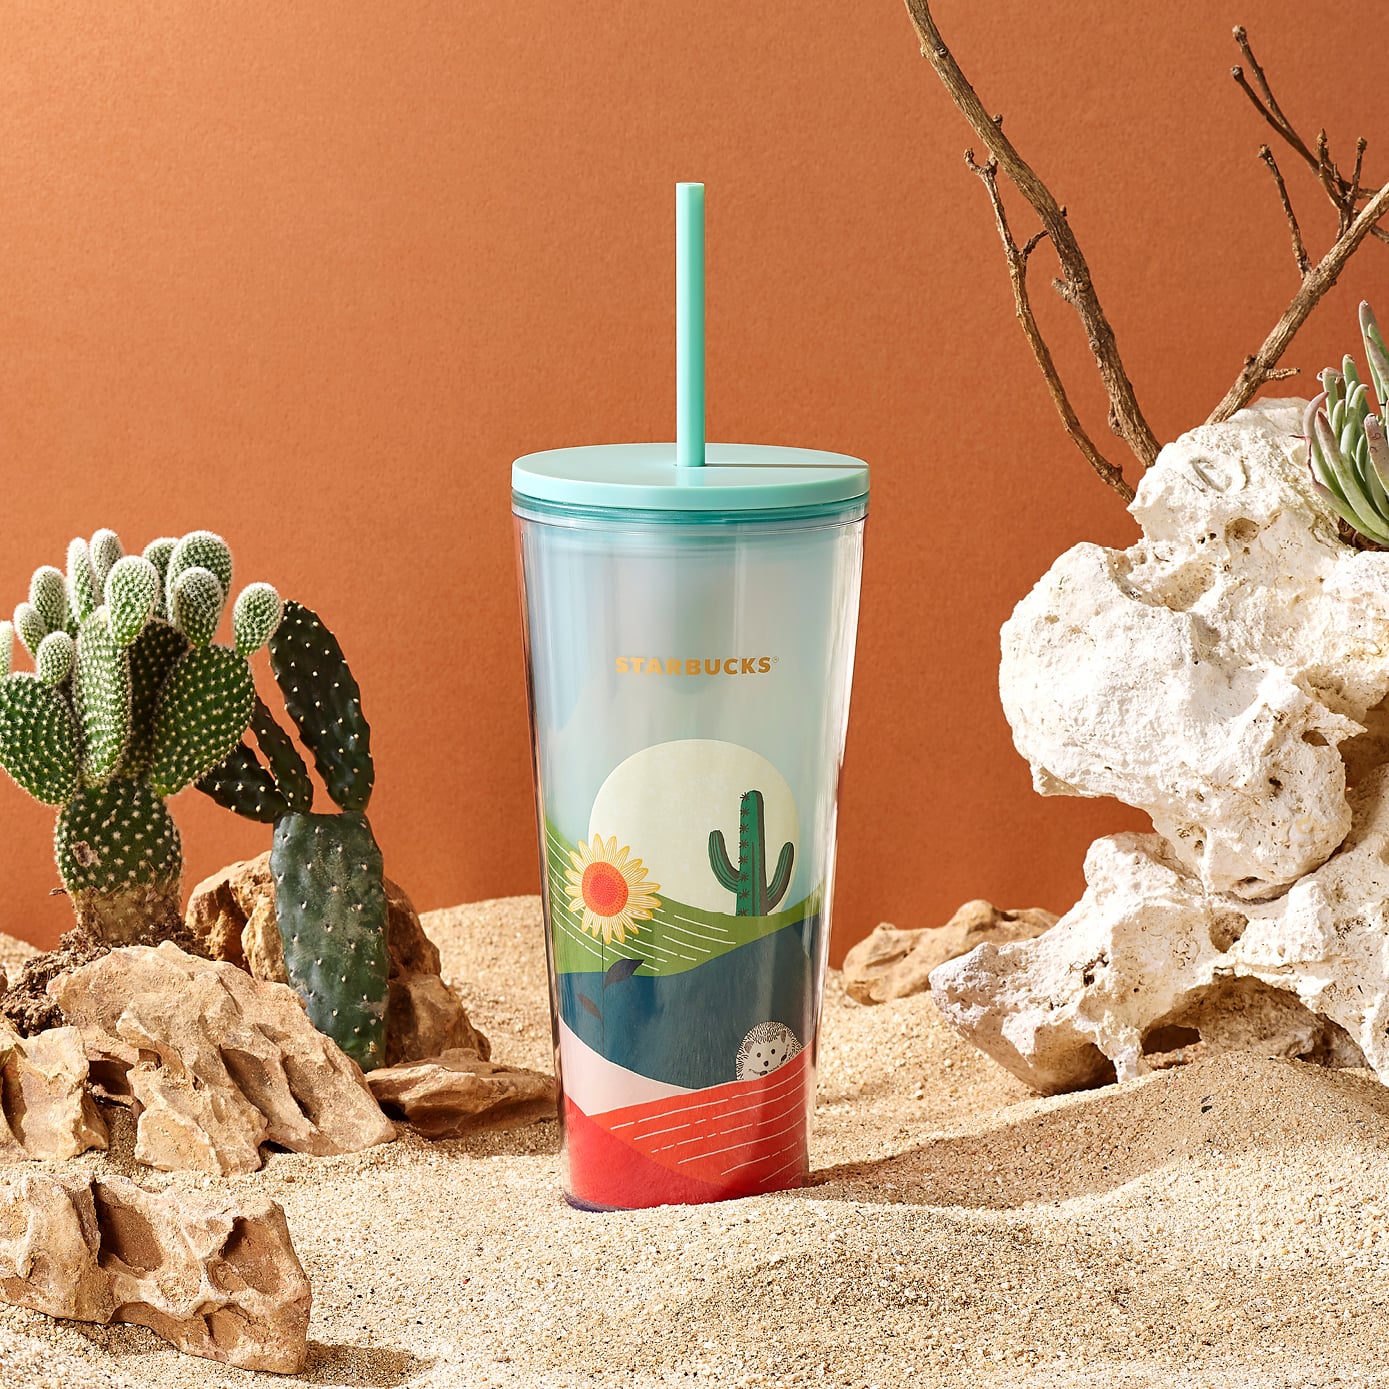 Starbucks 2021 China Summer Colorful Jungle Style Contigo 16oz Plastic